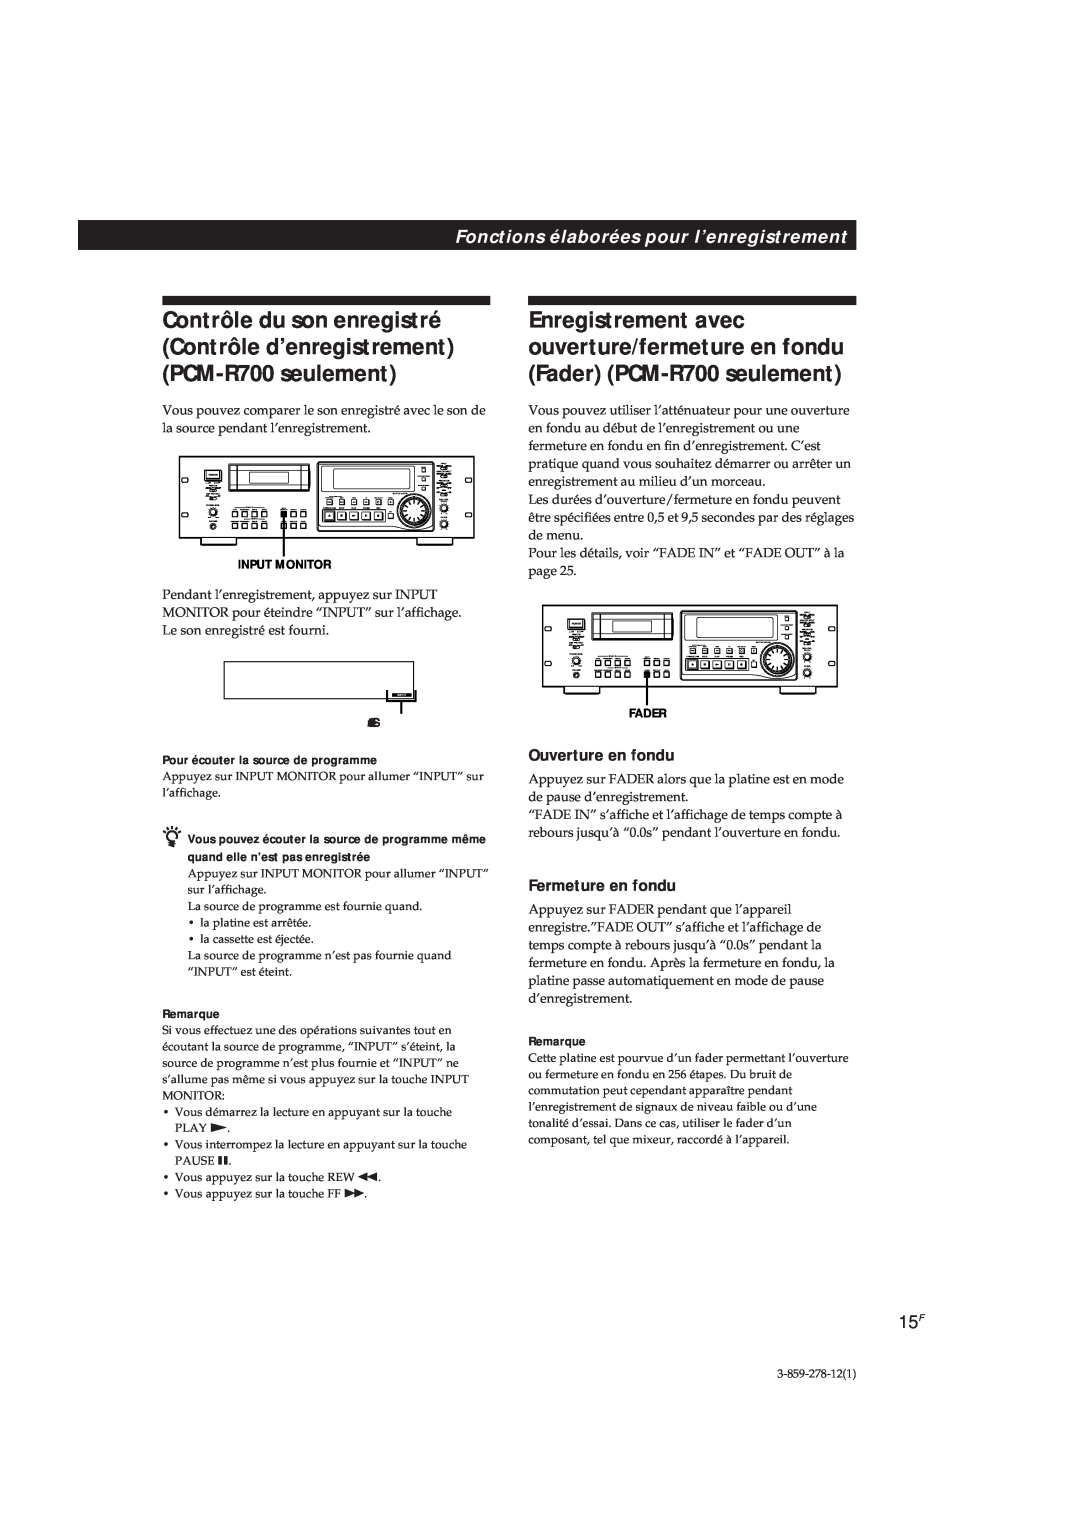 Sony PCM-R700, PCM-R500 manual Fonctions élaborées pour l’enregistrement, Ouverture en fondu, Fermeture en fondu, Remarque 